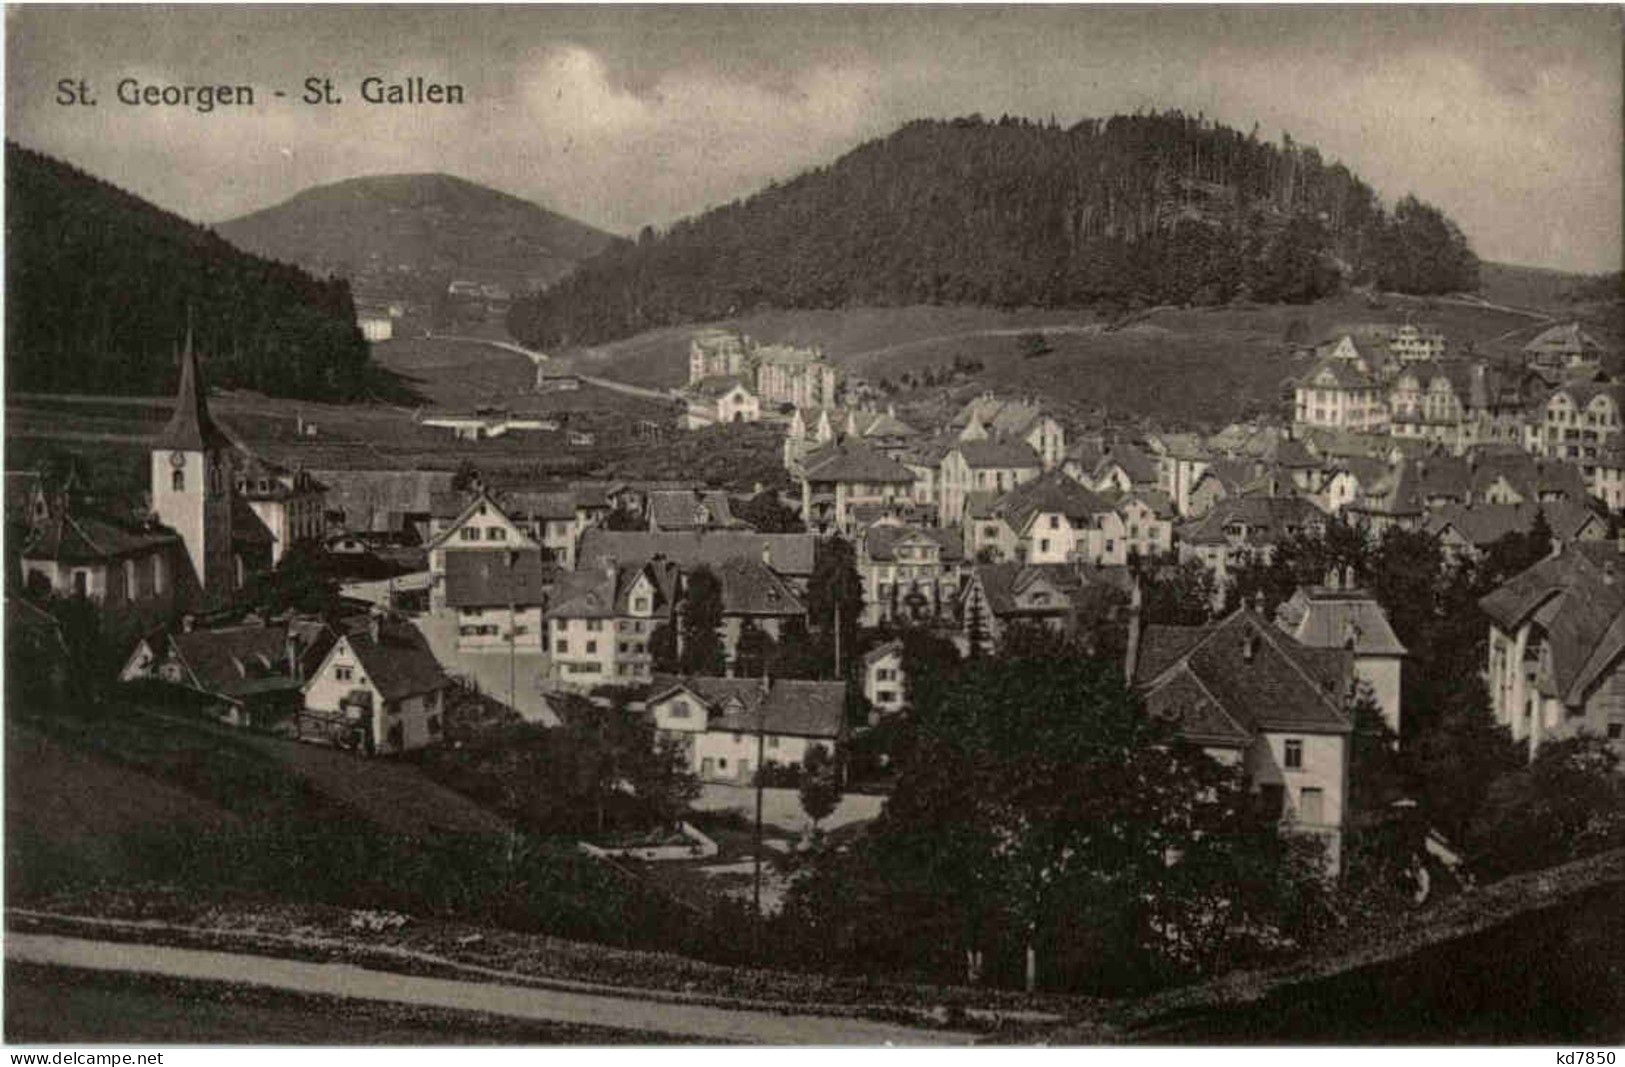 St. Gallen - St. Georgen - Sankt Gallen